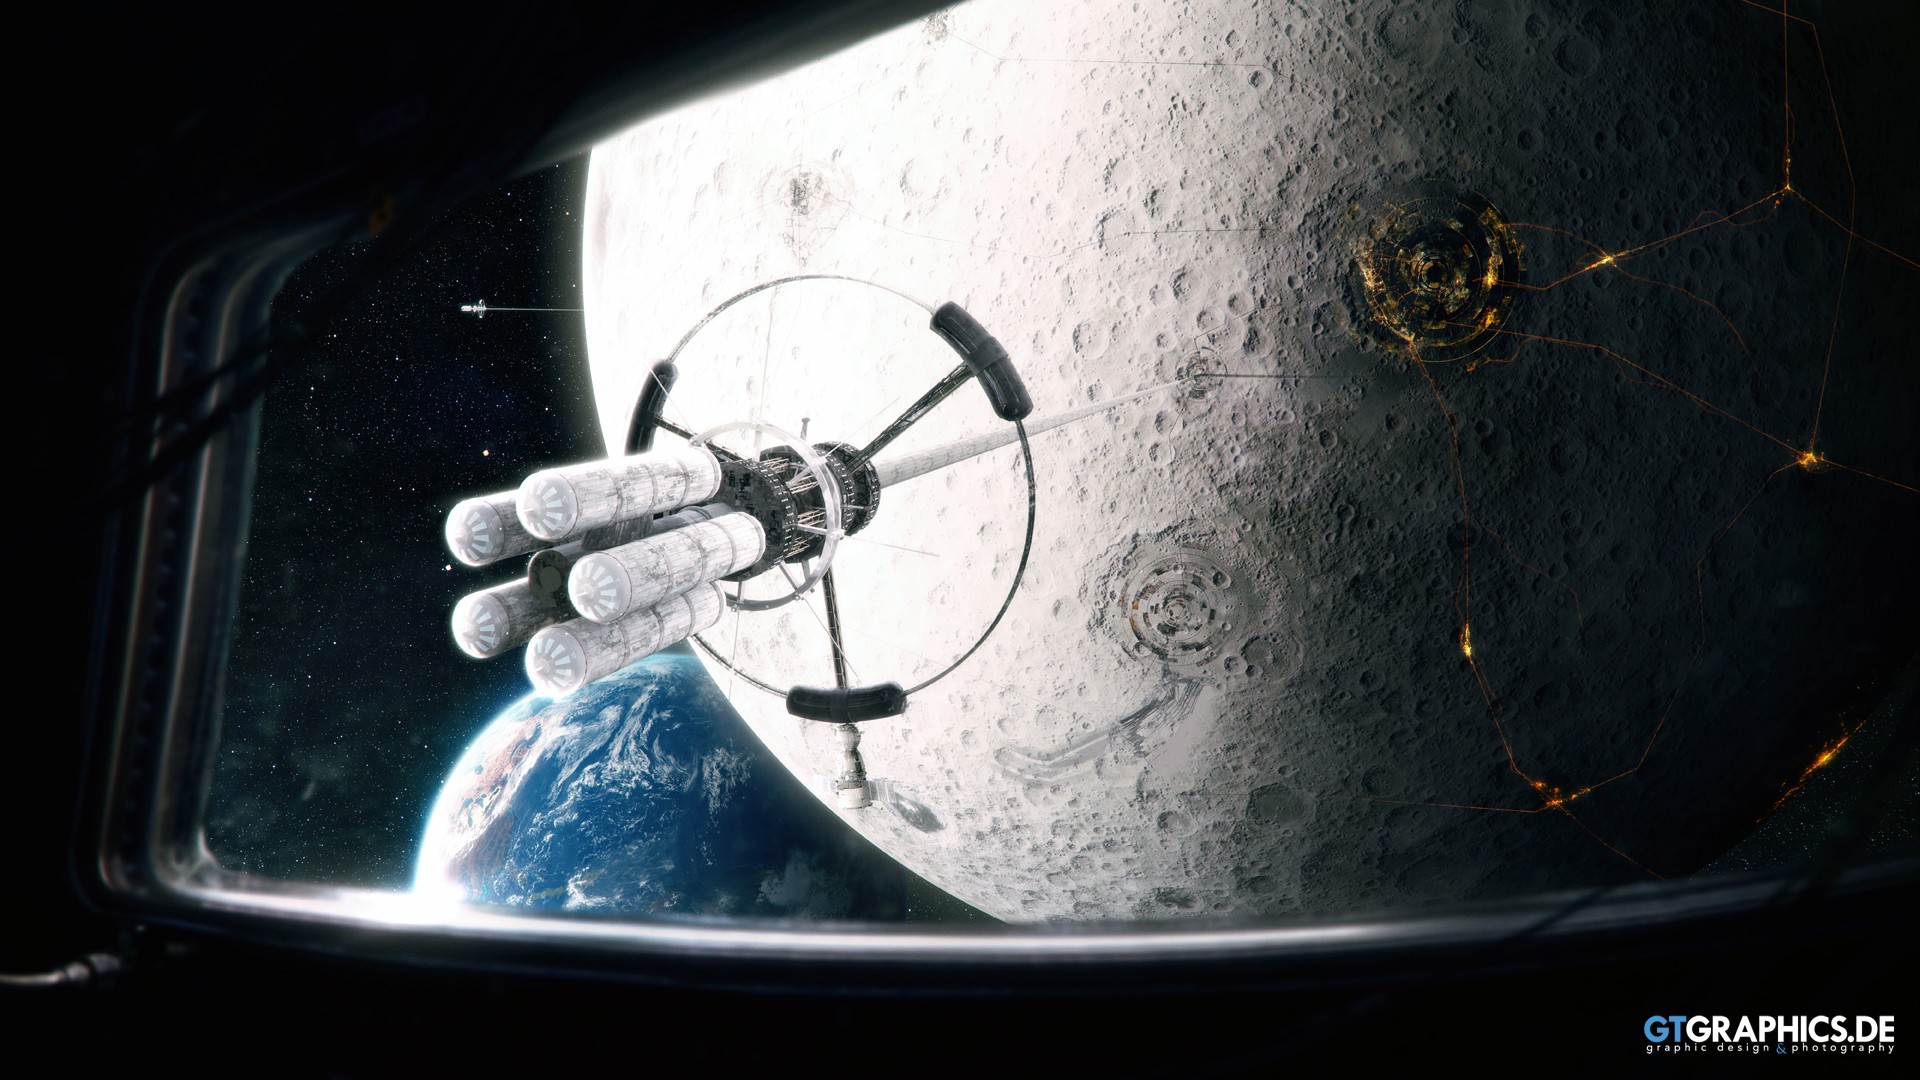 Скачать картинку Луна, Научная Фантастика в телефон бесплатно.